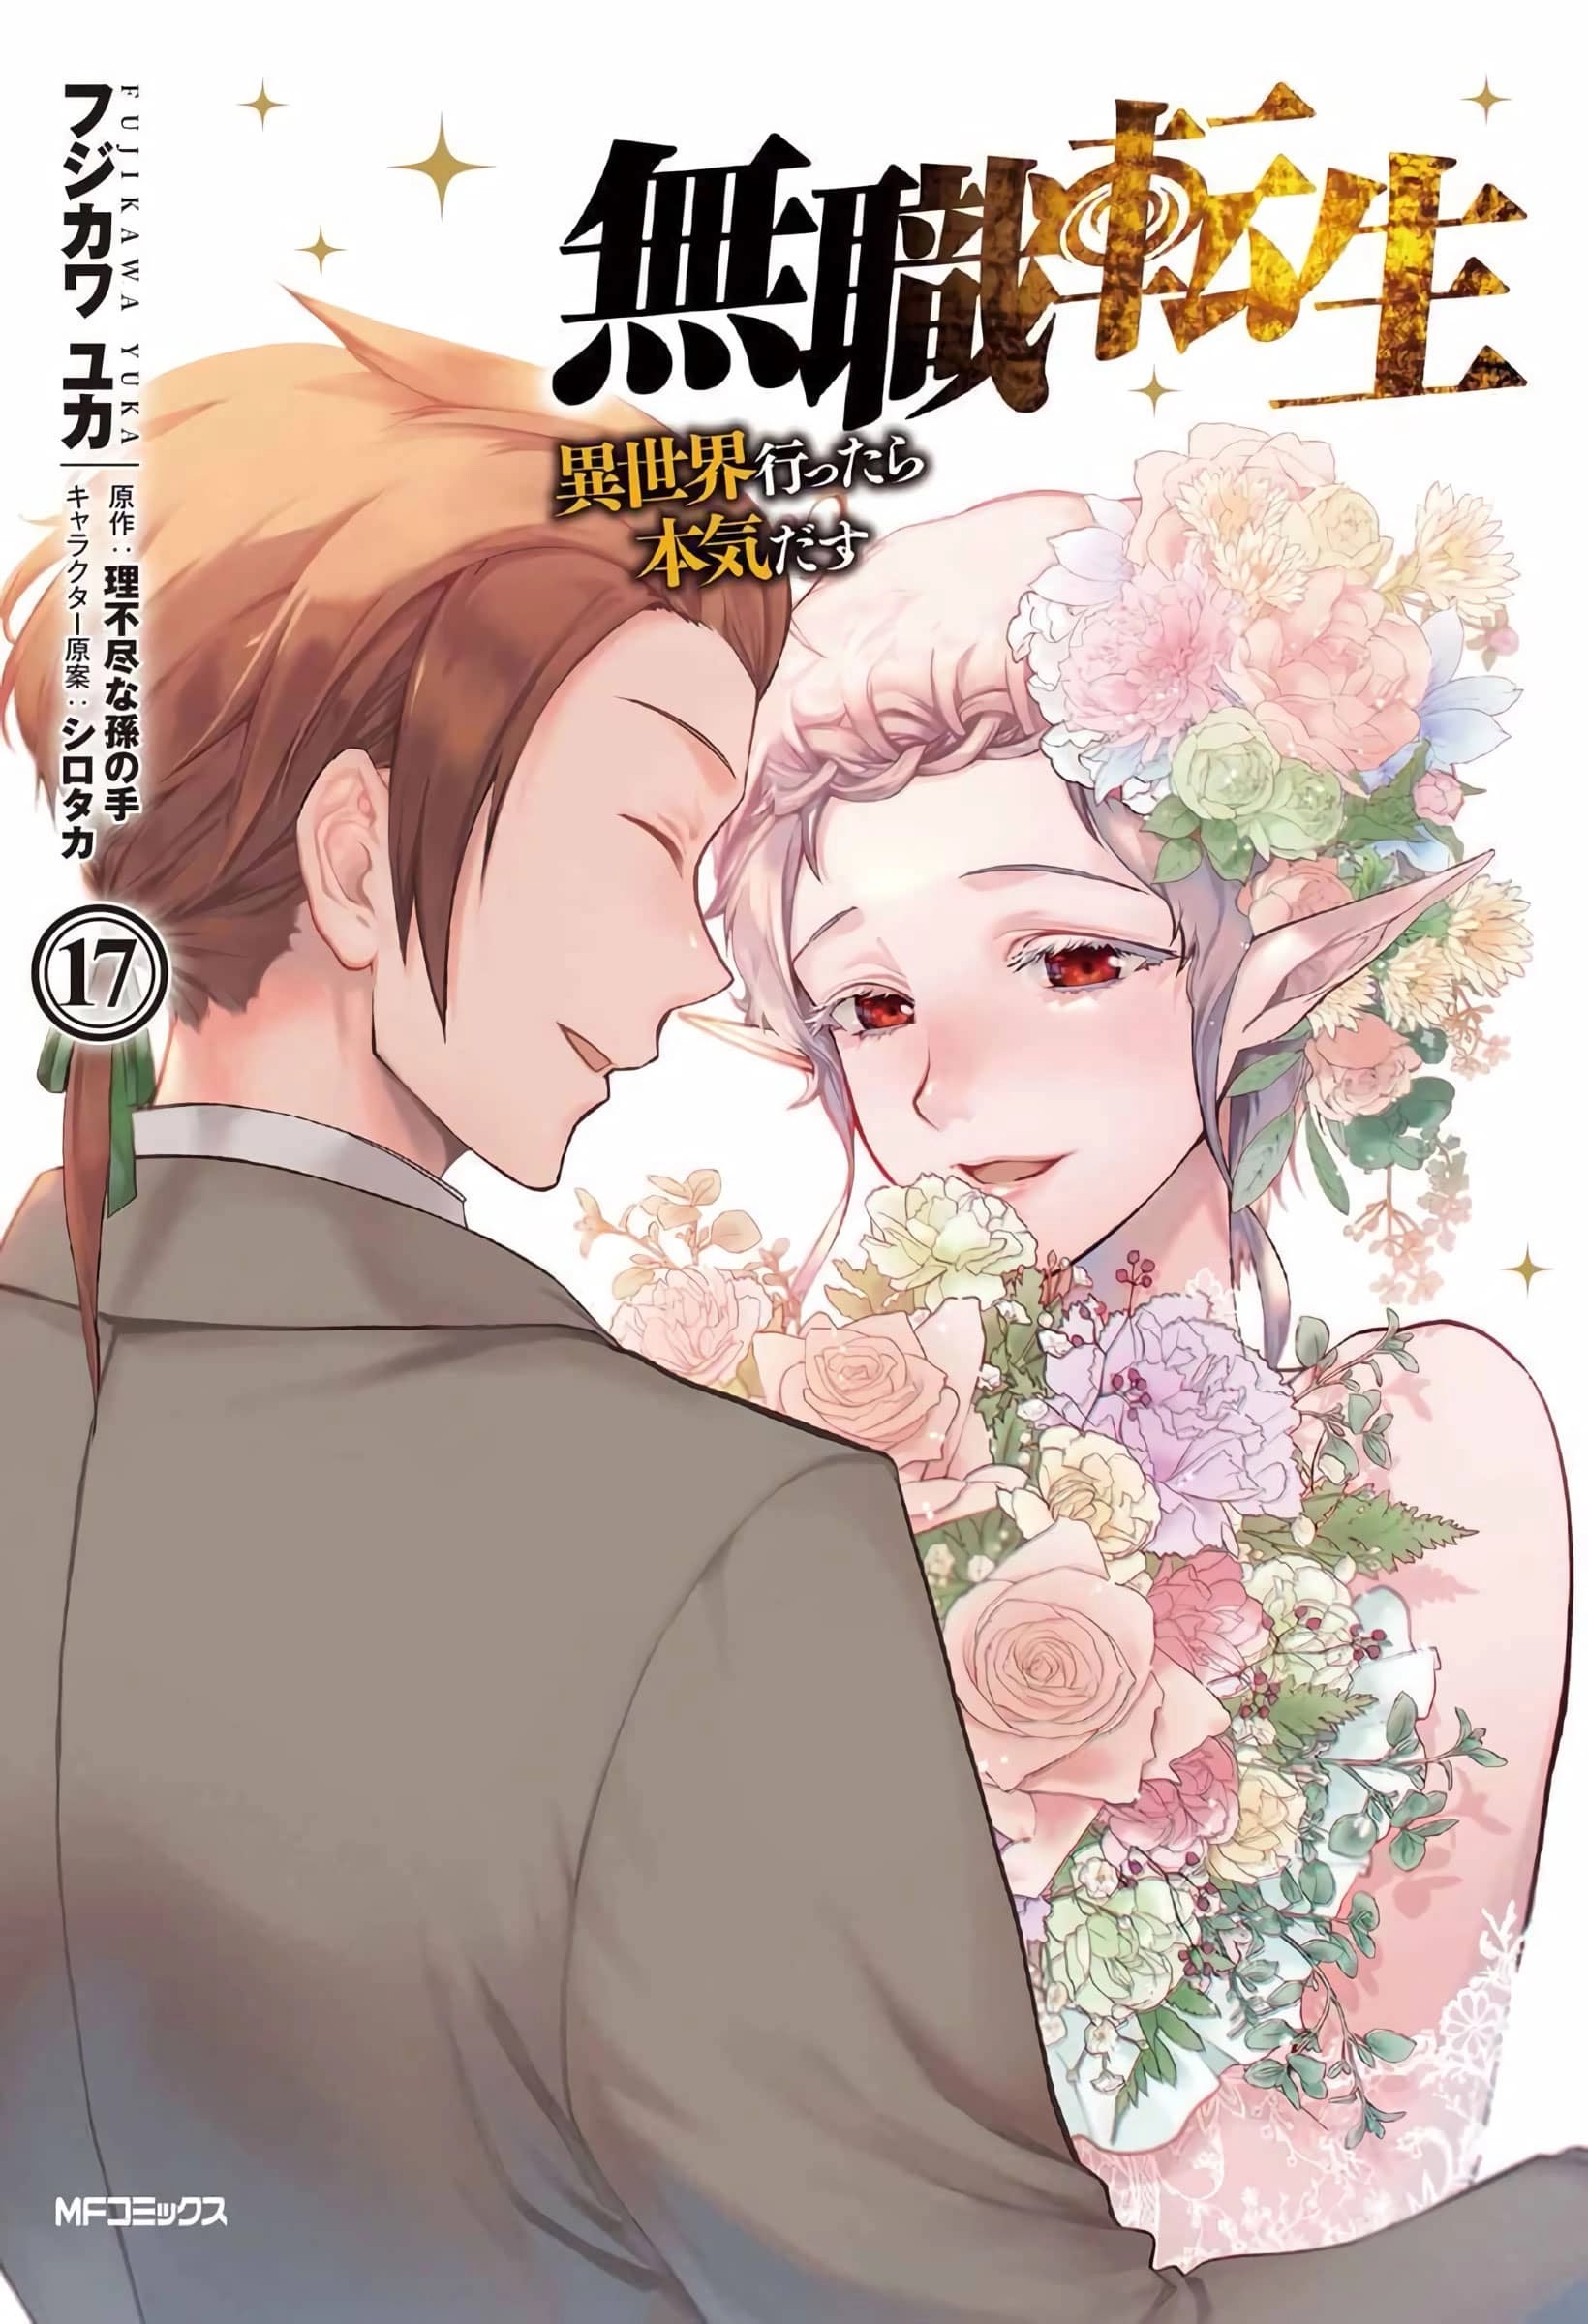 El manga de Mushoku Tensei revelo la portada para su volumen #17